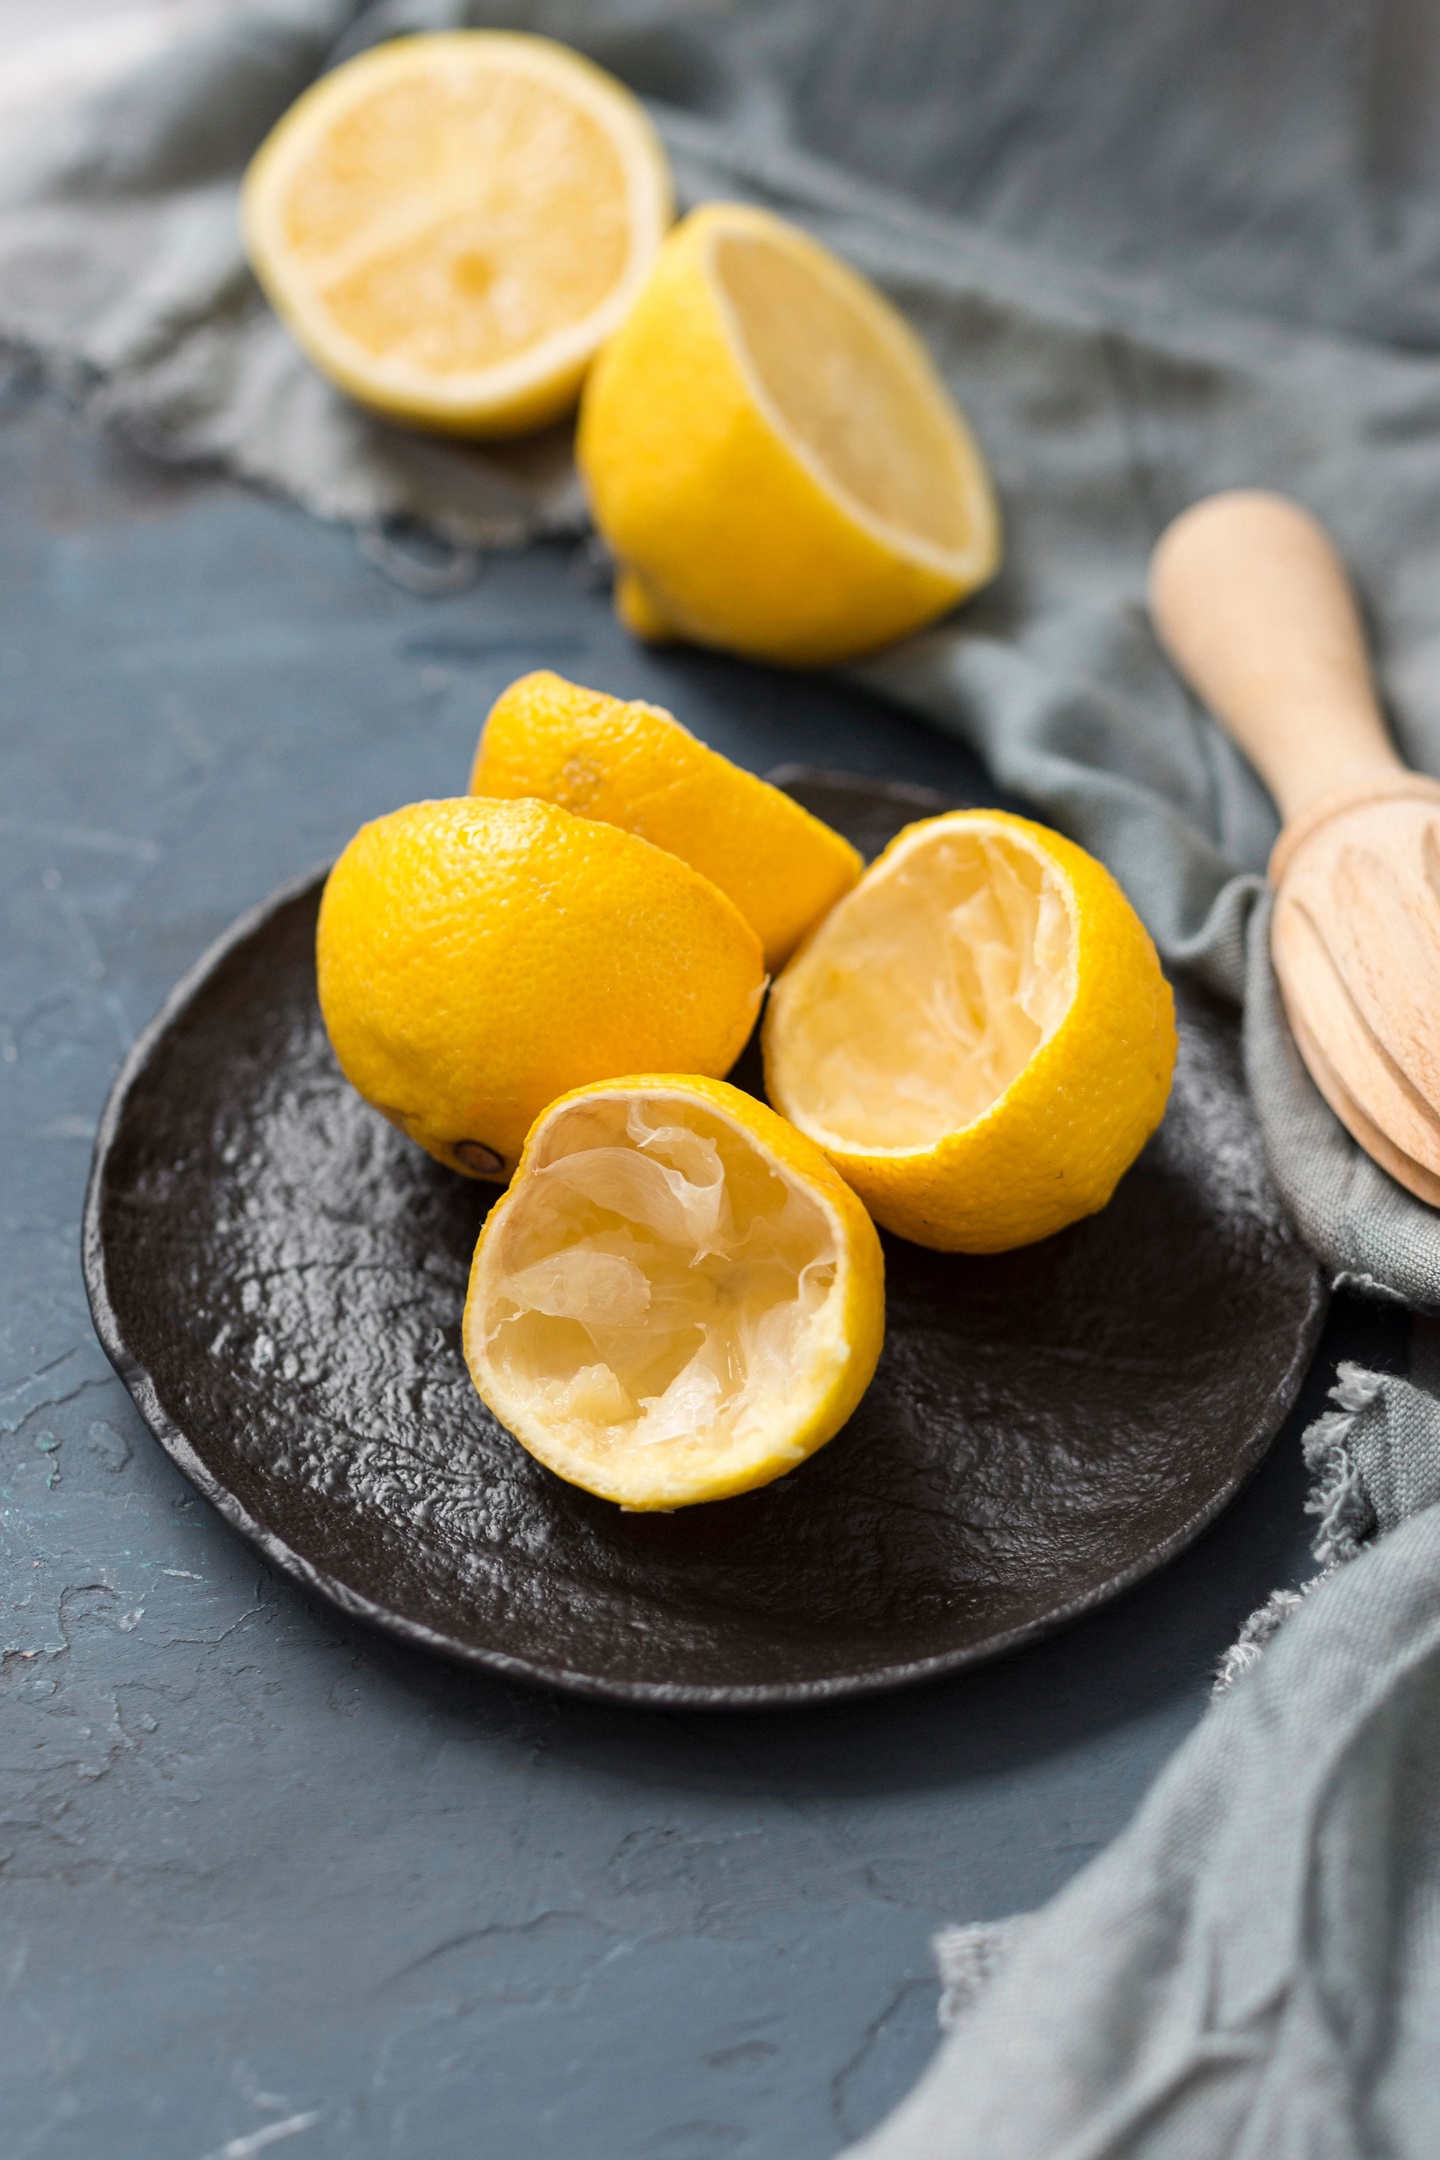 Сварите лимон и выпейте воду натощак: утром не узнаете себя в зеркале